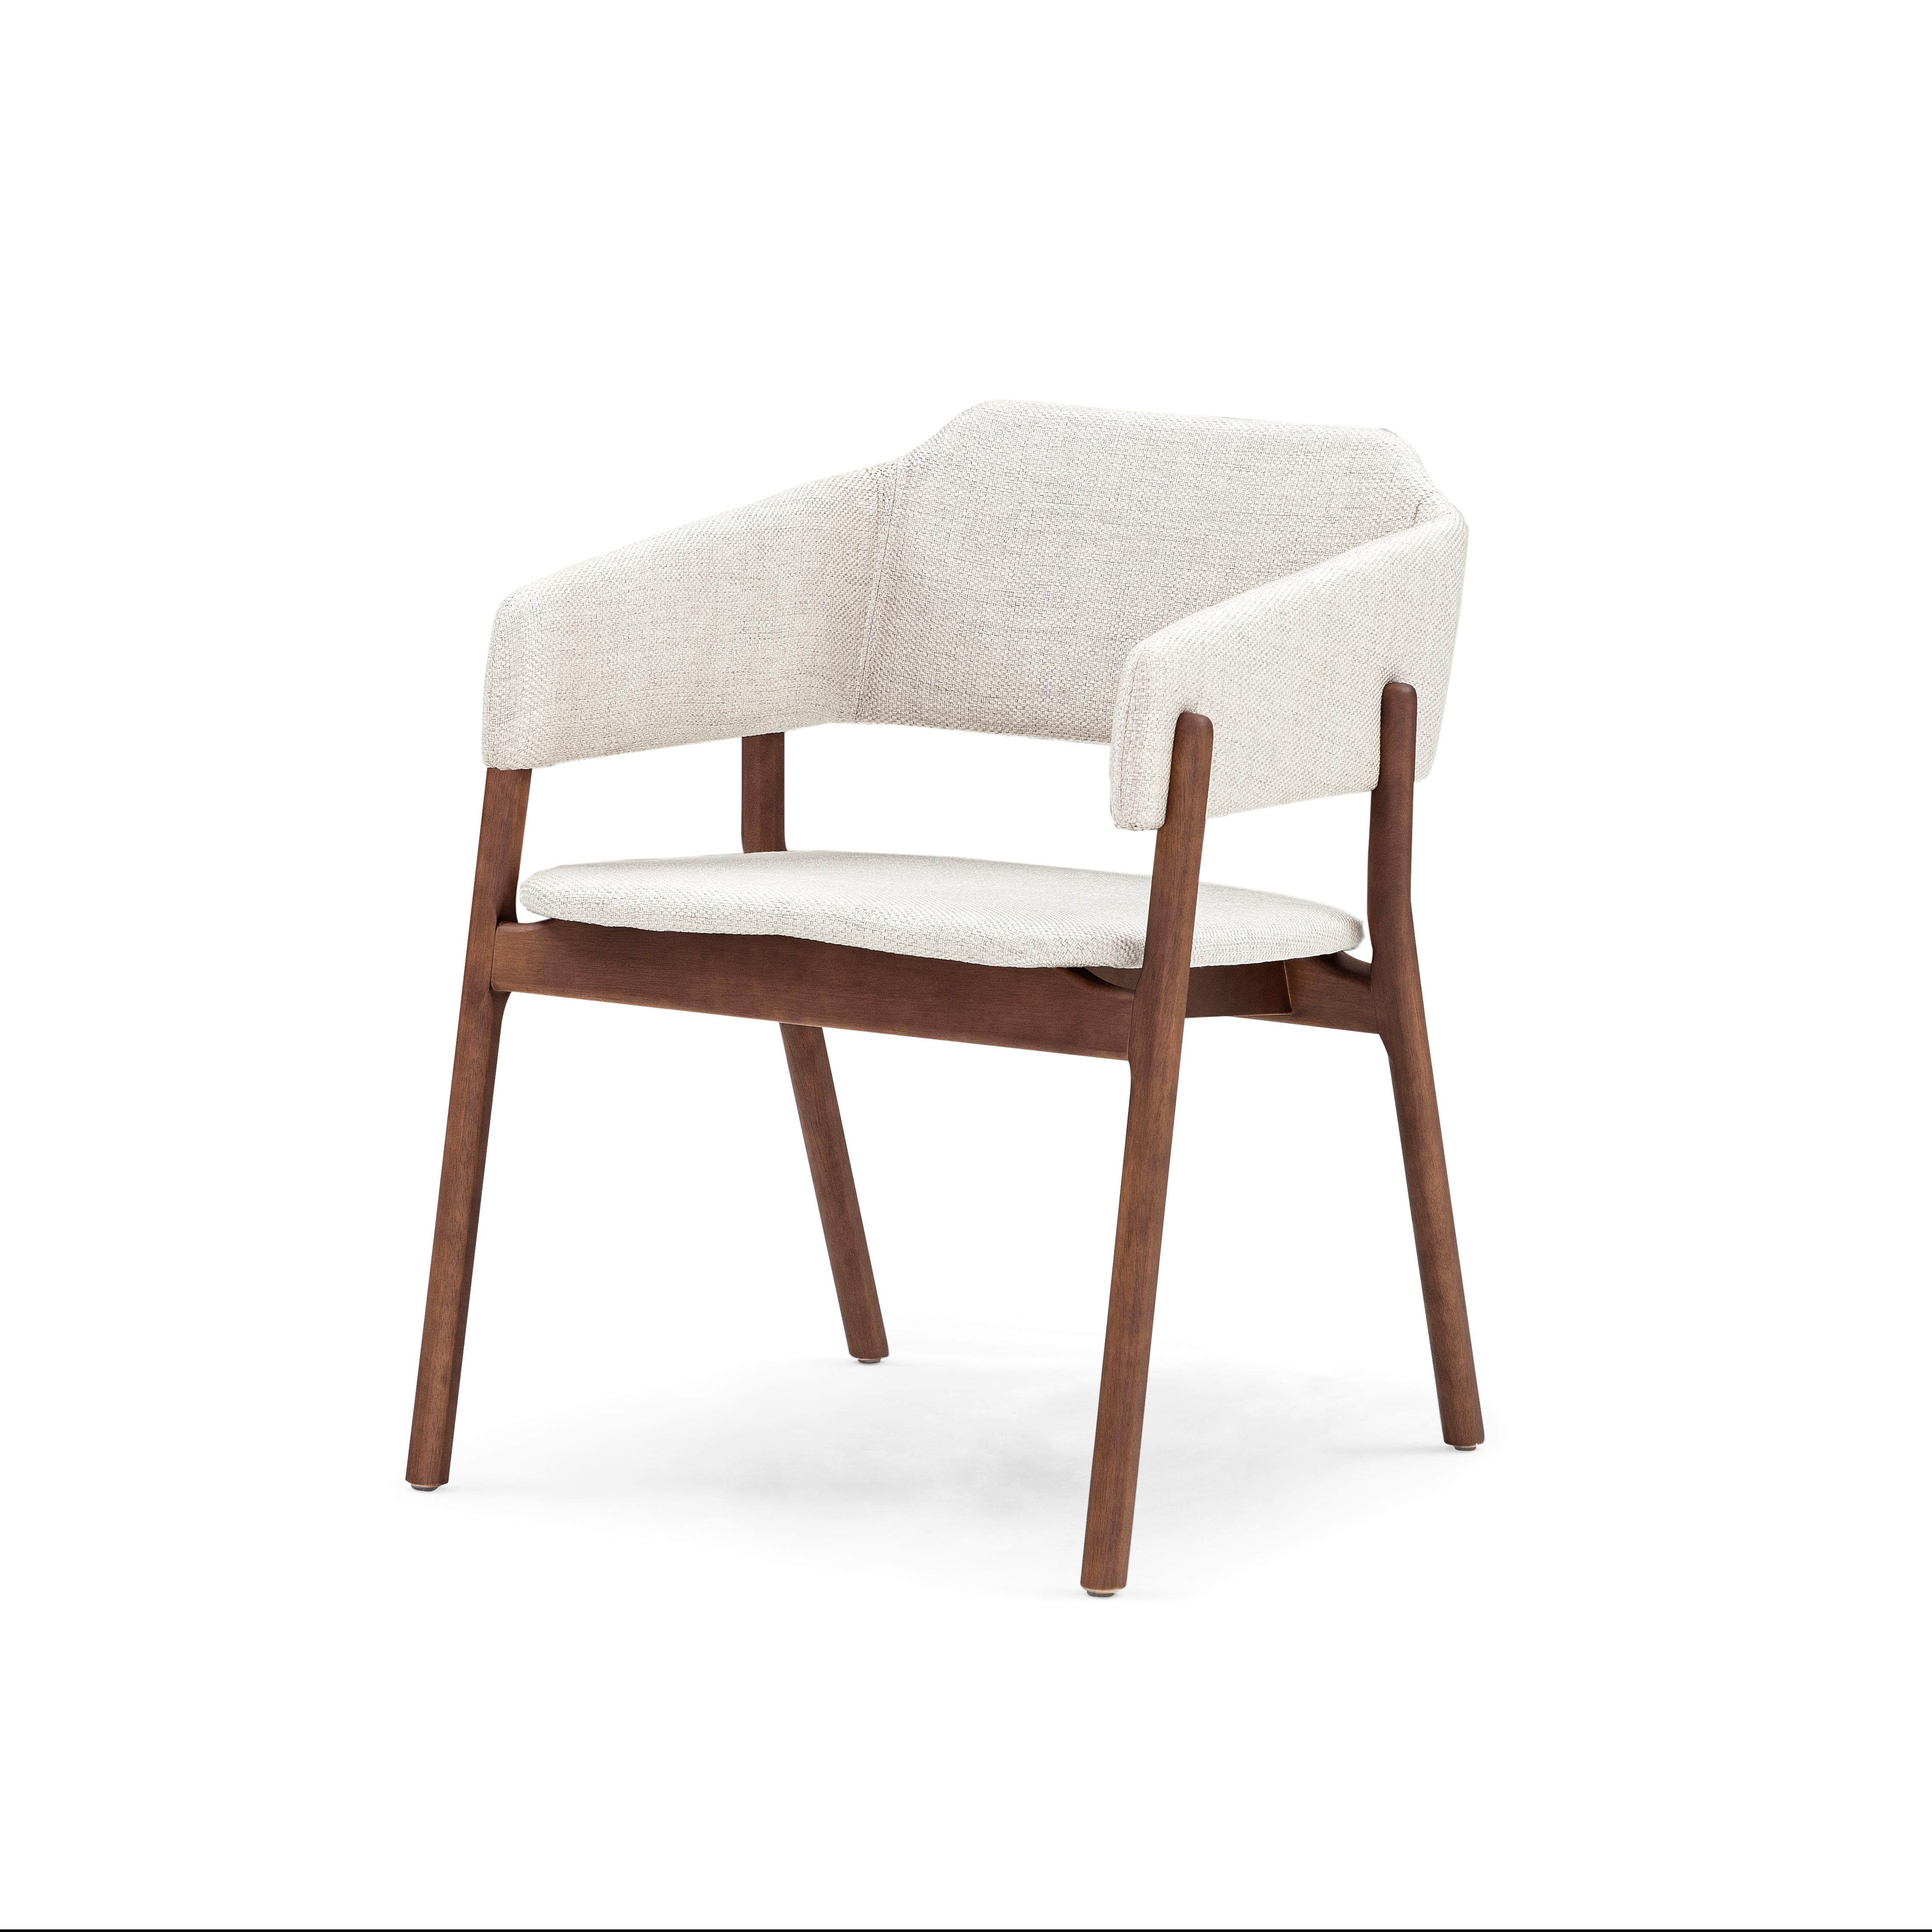 Notre équipe d'Uultis a créé cette magnifique chaise de salle à manger Whiting pour décorer votre belle table de salle à manger avec un tissu blanc cassé et une finition en bois de noyer. Cette chaise a un beau design simple mais élégant qui va